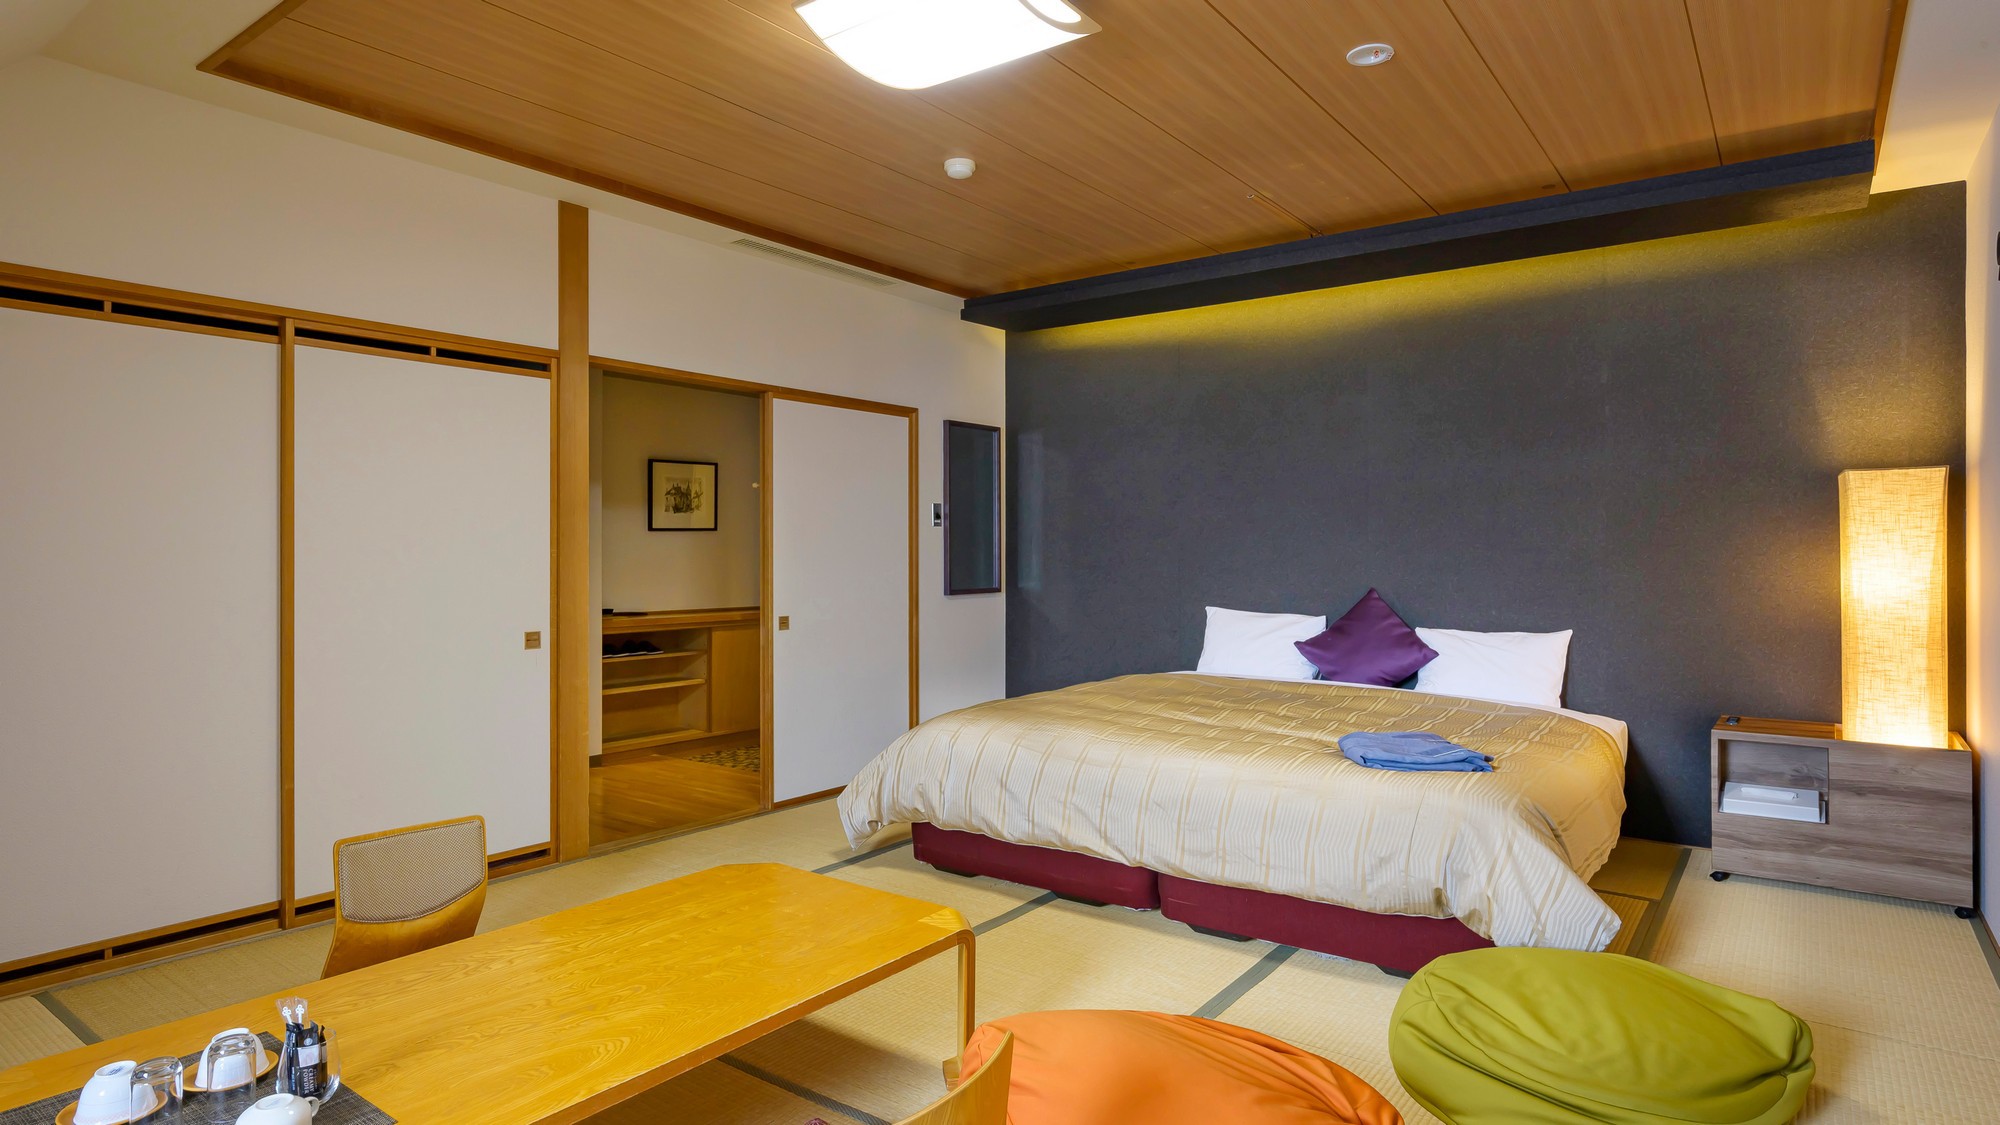 【和室キングベッド 35㎡】通常のお部屋よりも広く、キングサイズベッド設置、ダブルルームの和室。